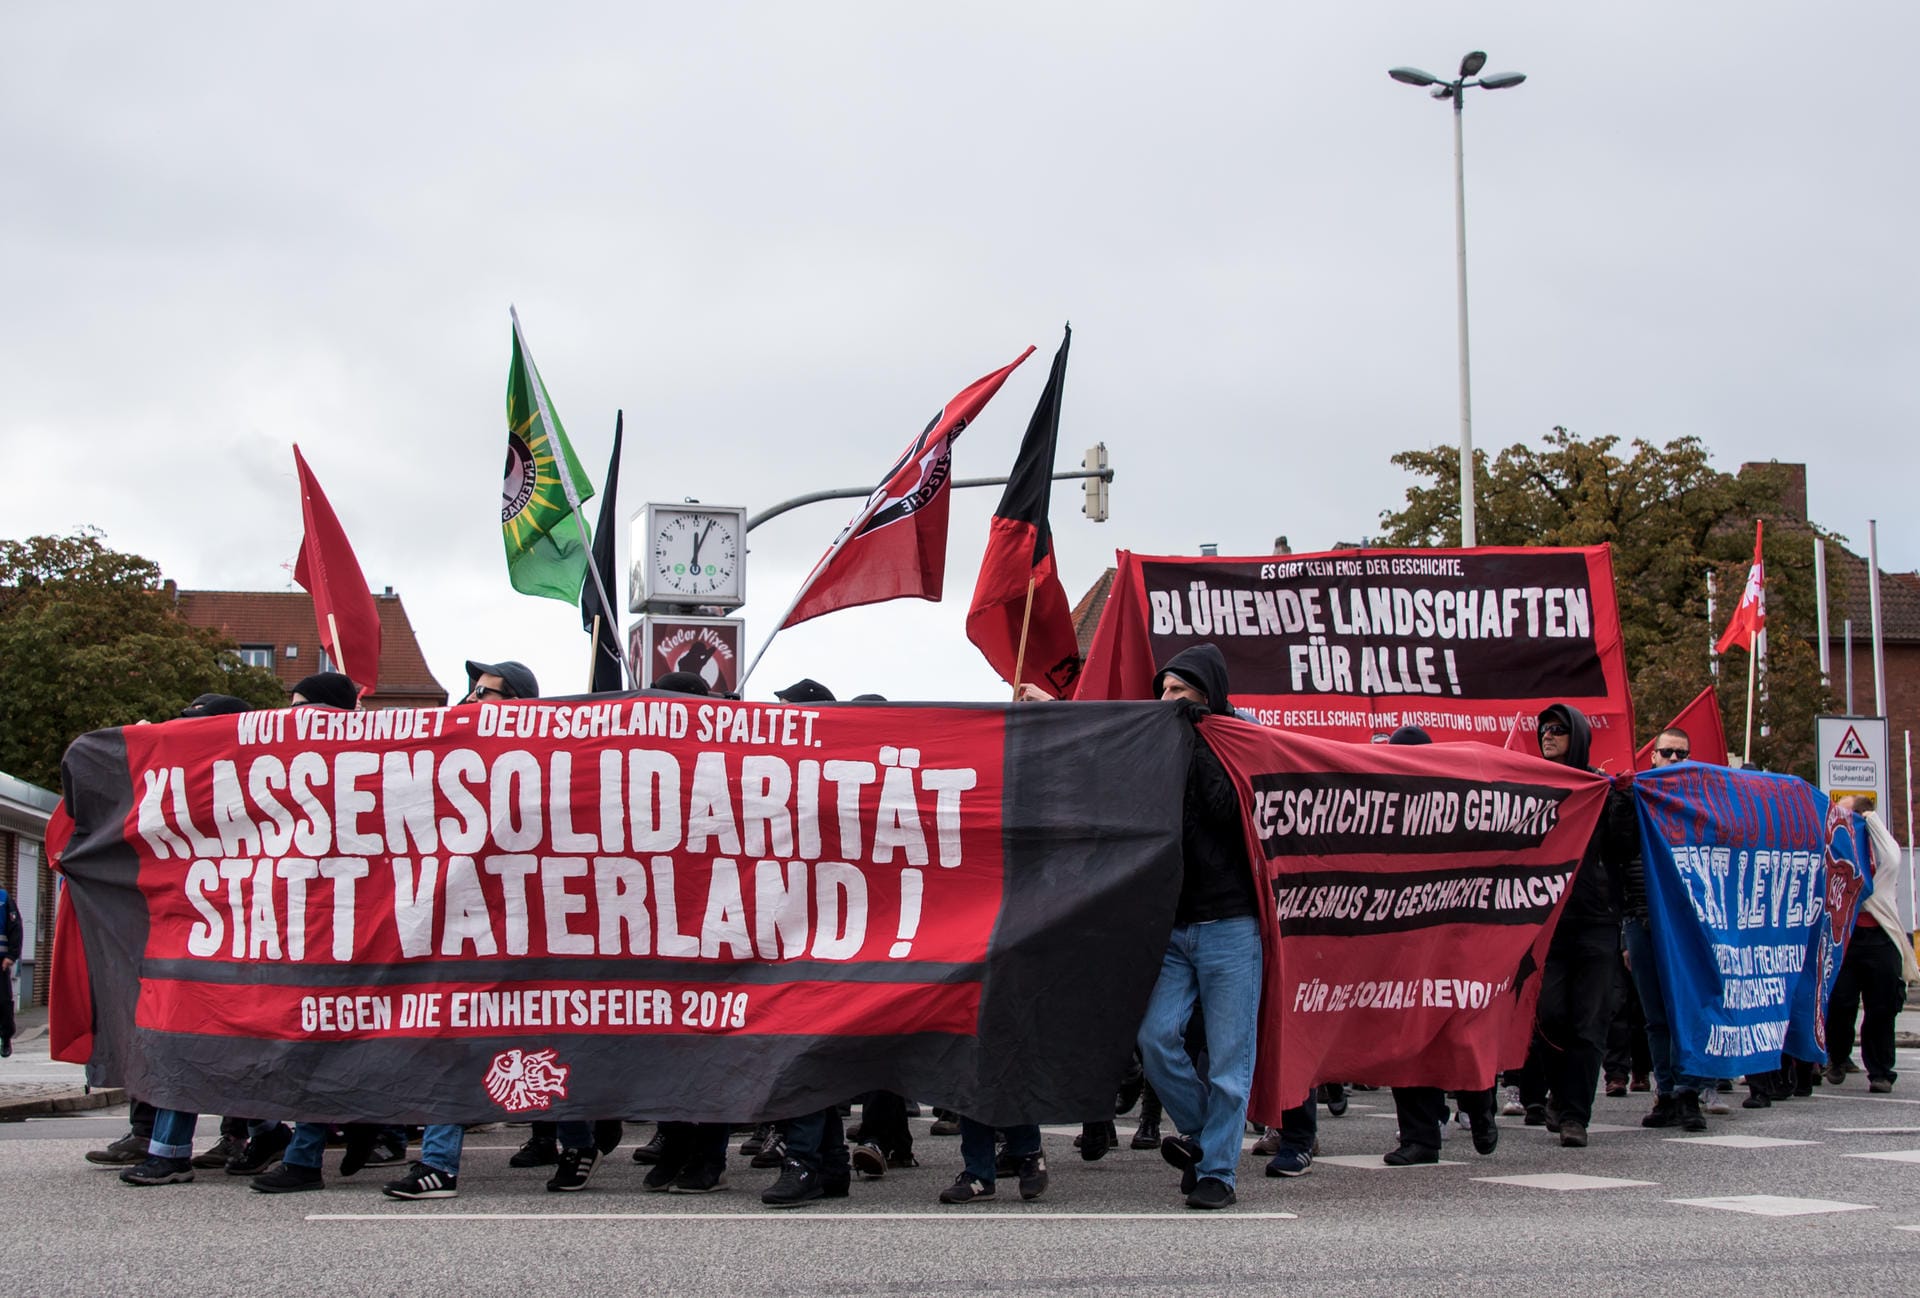 ...bei einer Demonstration in Kiel forderten linke Aktivisten "Klassensolidarität statt Vaterland!" und "Blühende Landschaften für alle!".